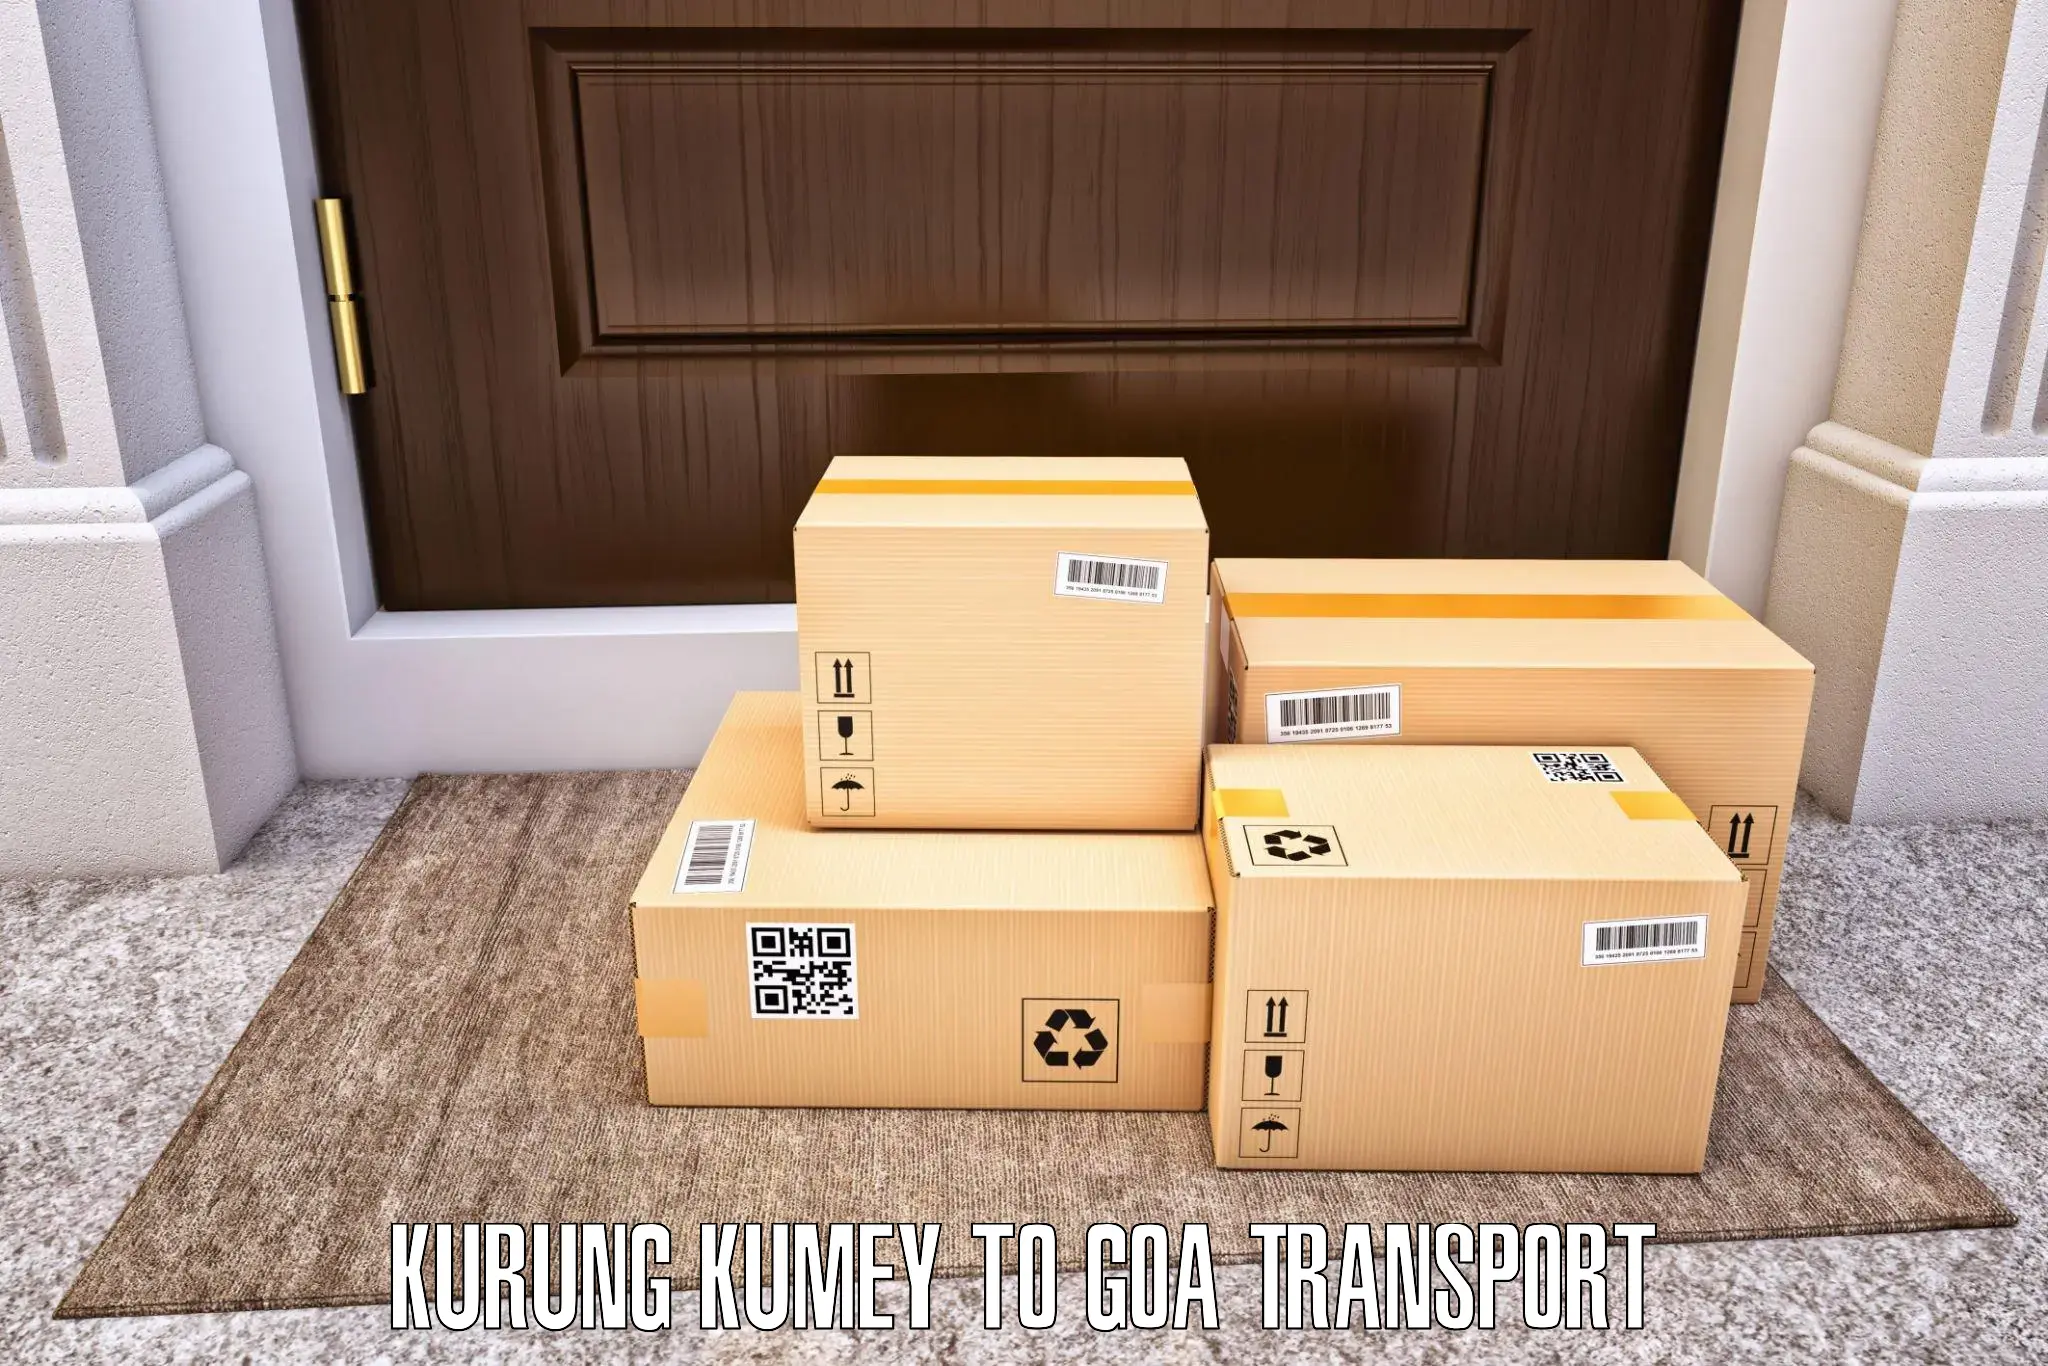 Luggage transport services Kurung Kumey to Goa